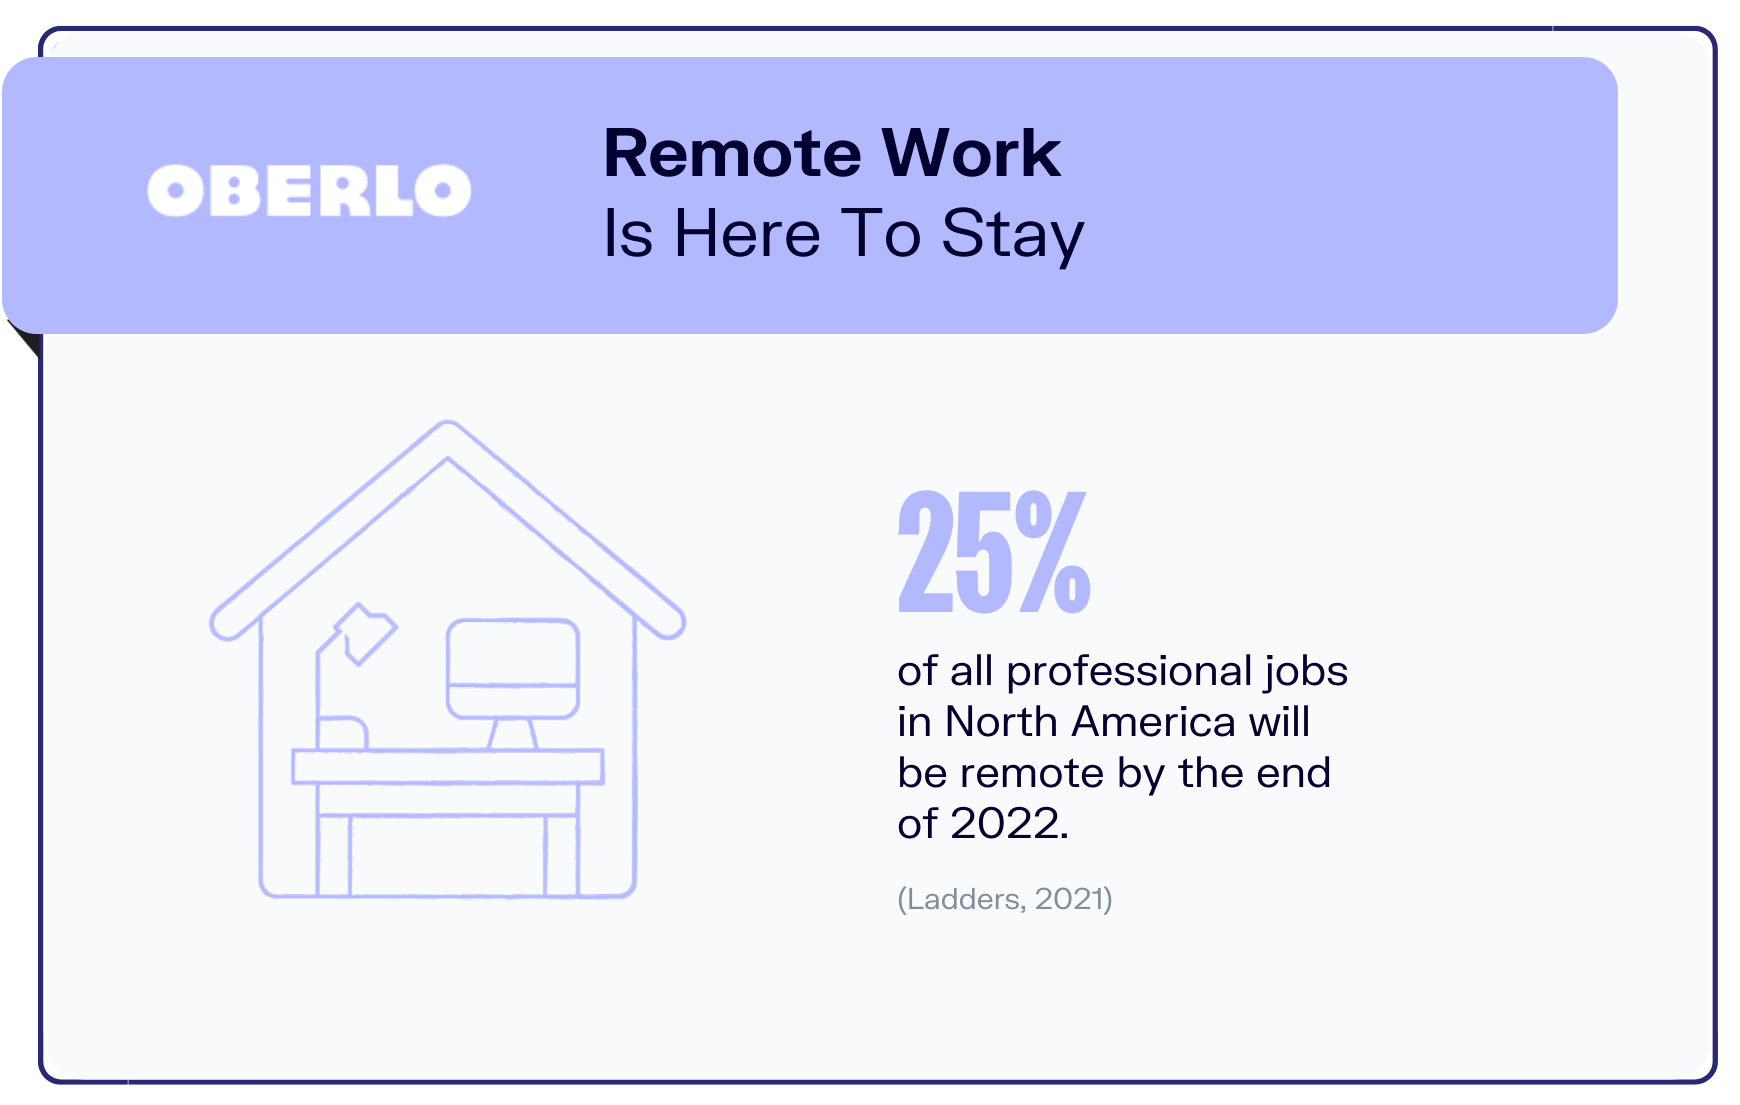 Remote work statistics graphic5